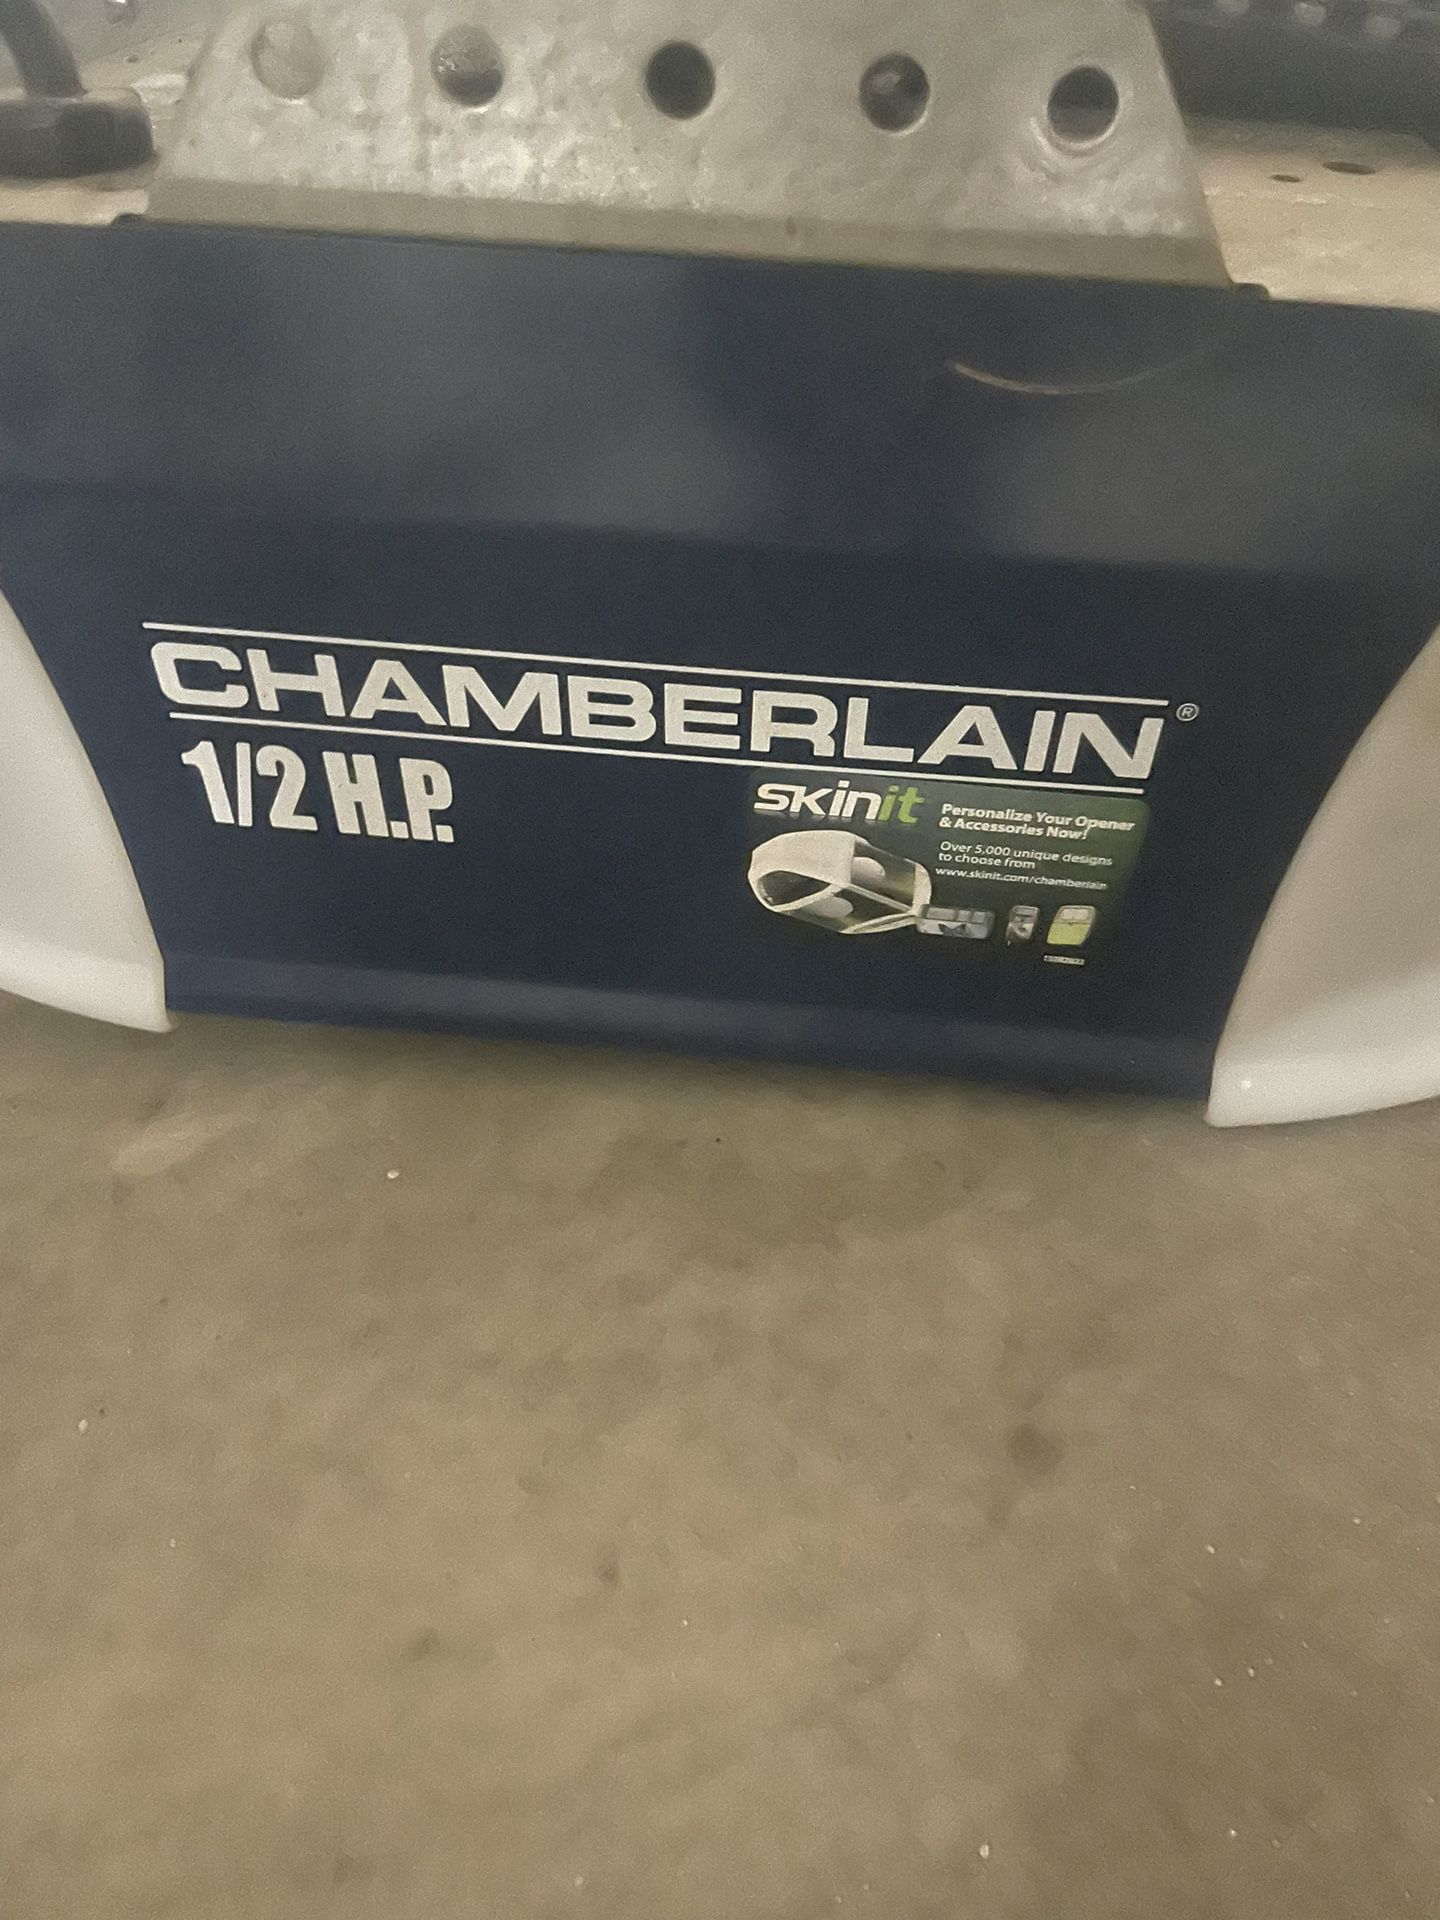 Chamberlain Garage Door Opener 1/2 HP